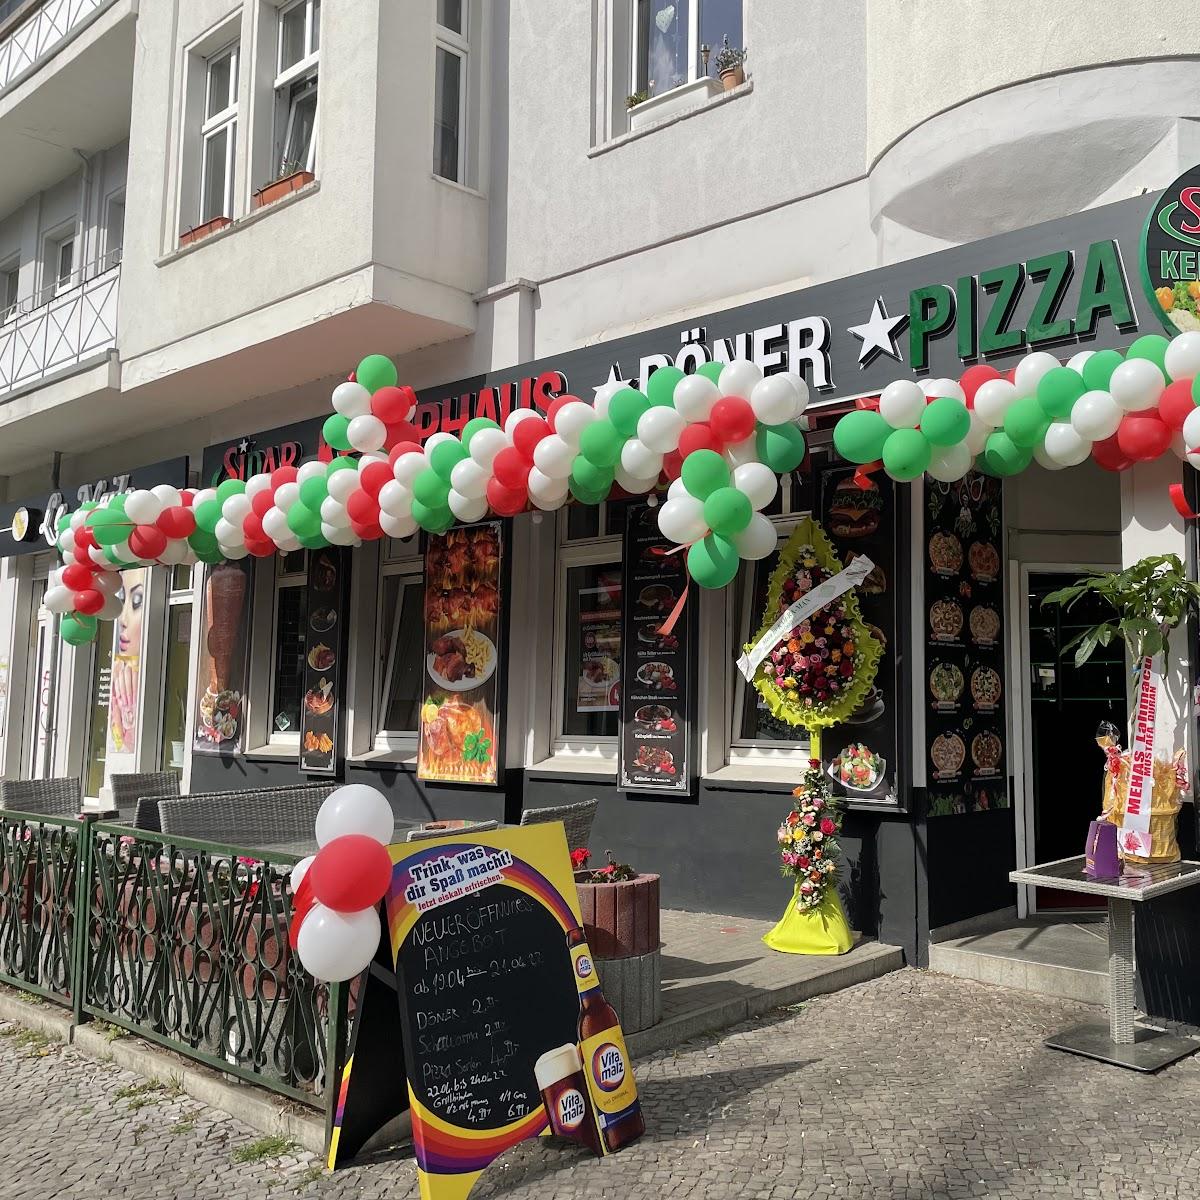 Restaurant "Sidar Döner Pizza Pasta" in Berlin